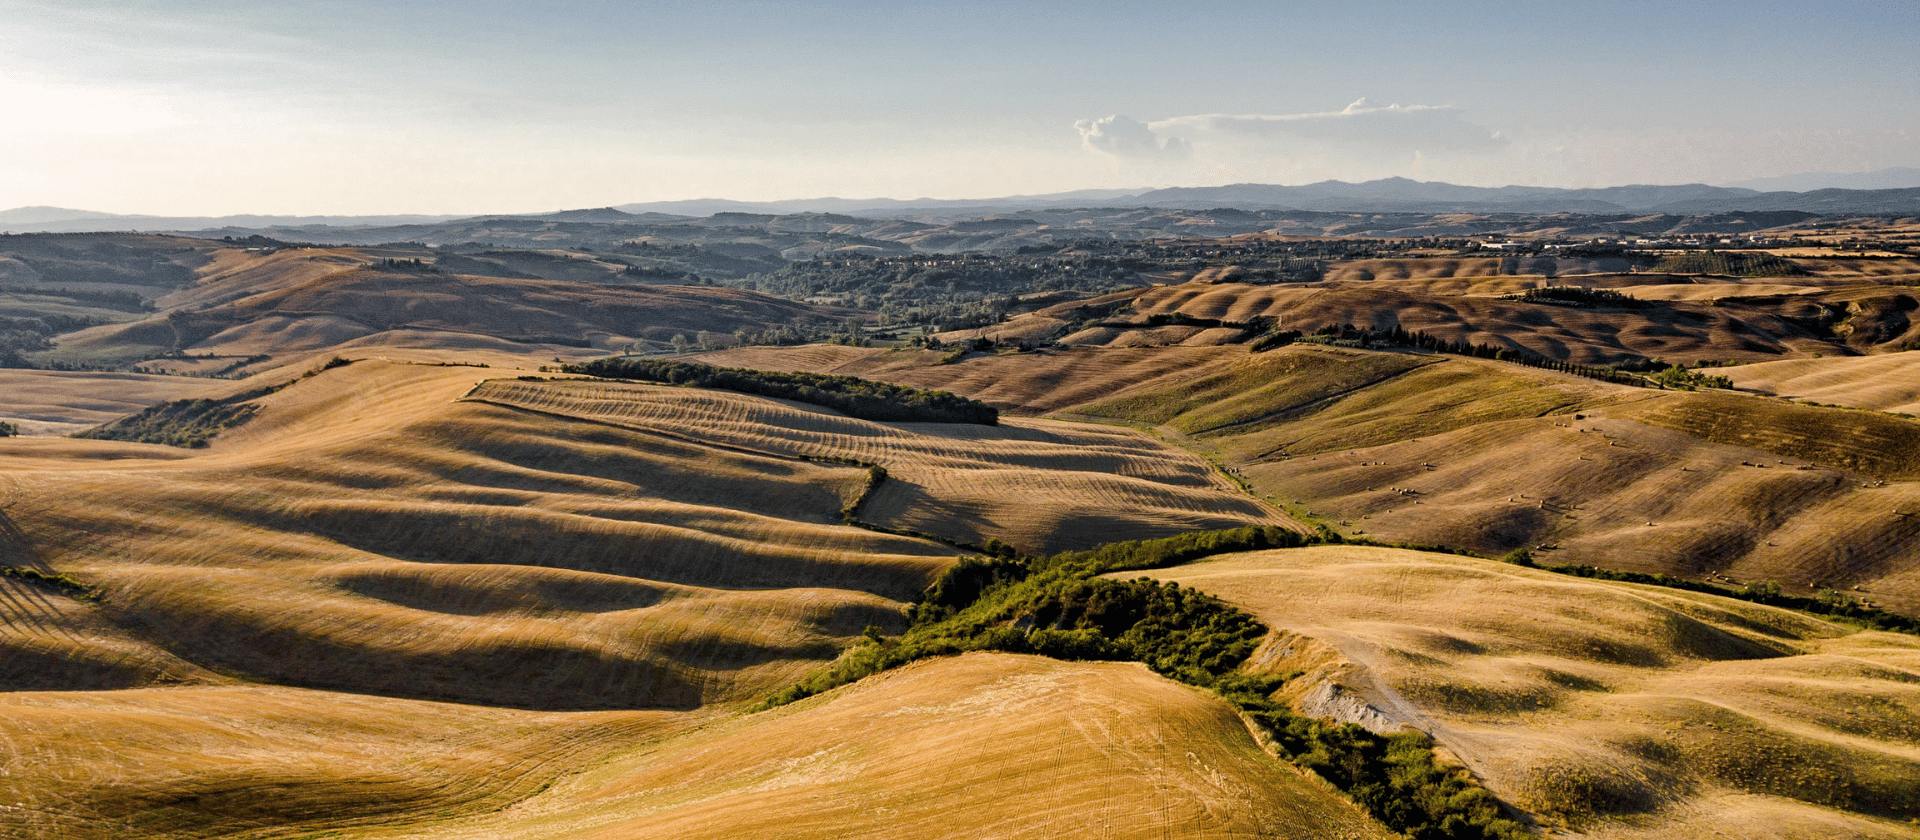 Agriturismo Podere bellaria-Azienda Agricola Biologica-Asciano (SI), Tuscany, Italy